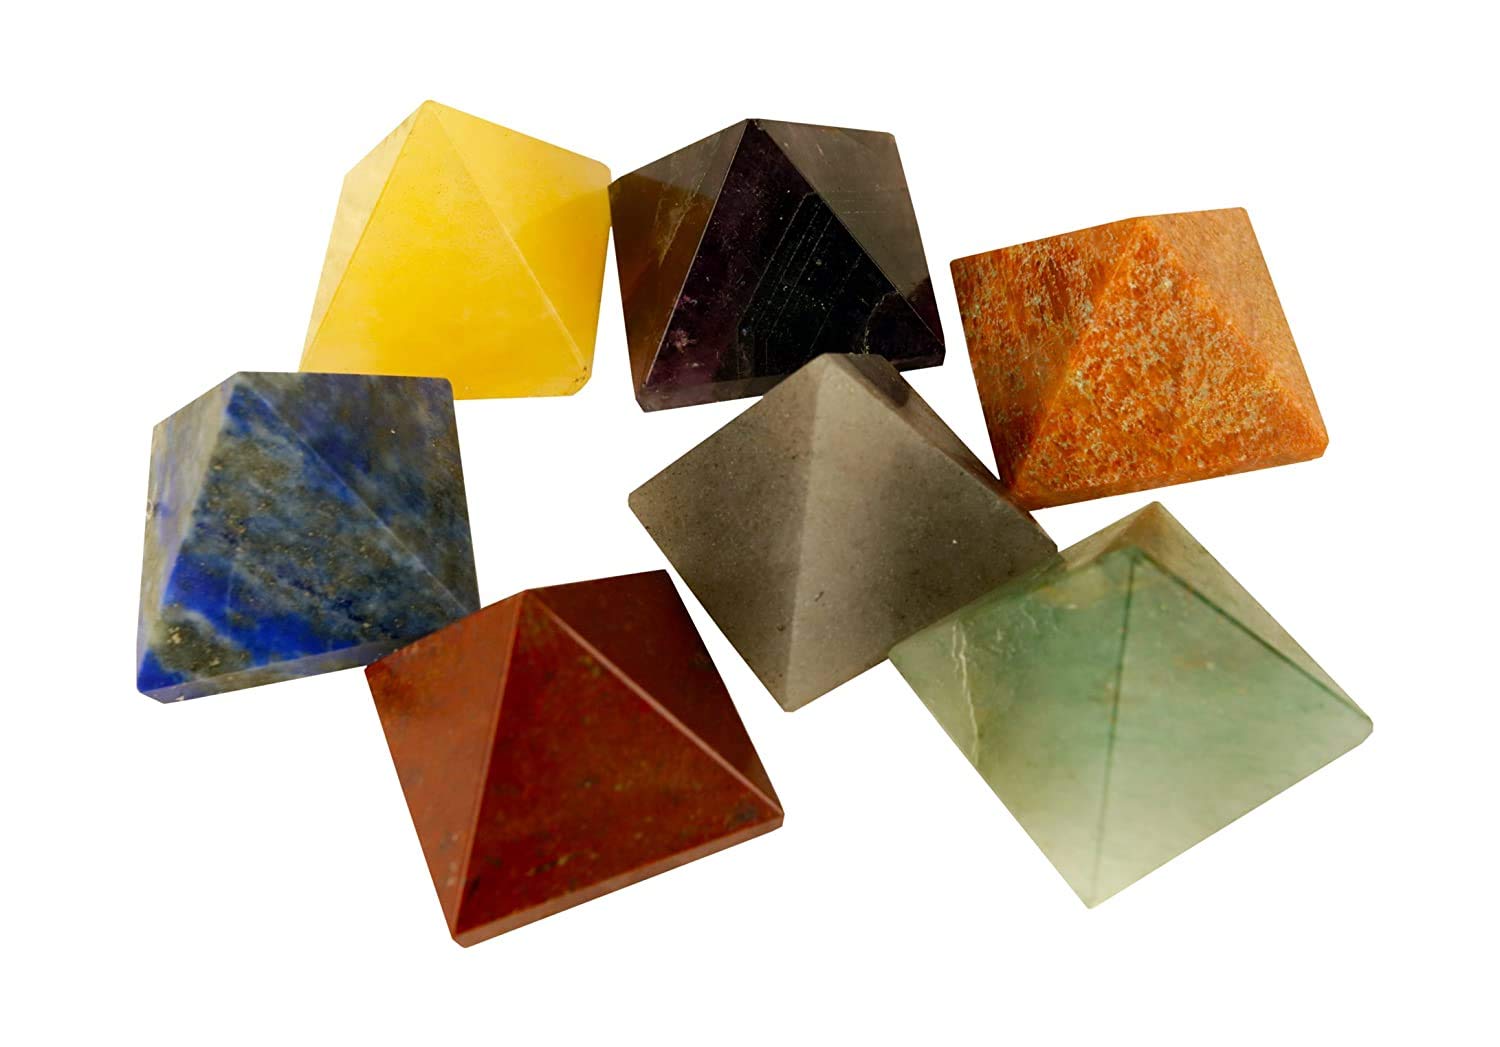 Healing Crystals - Wholesale Seven Chakra Pyramid Set 1 Inches